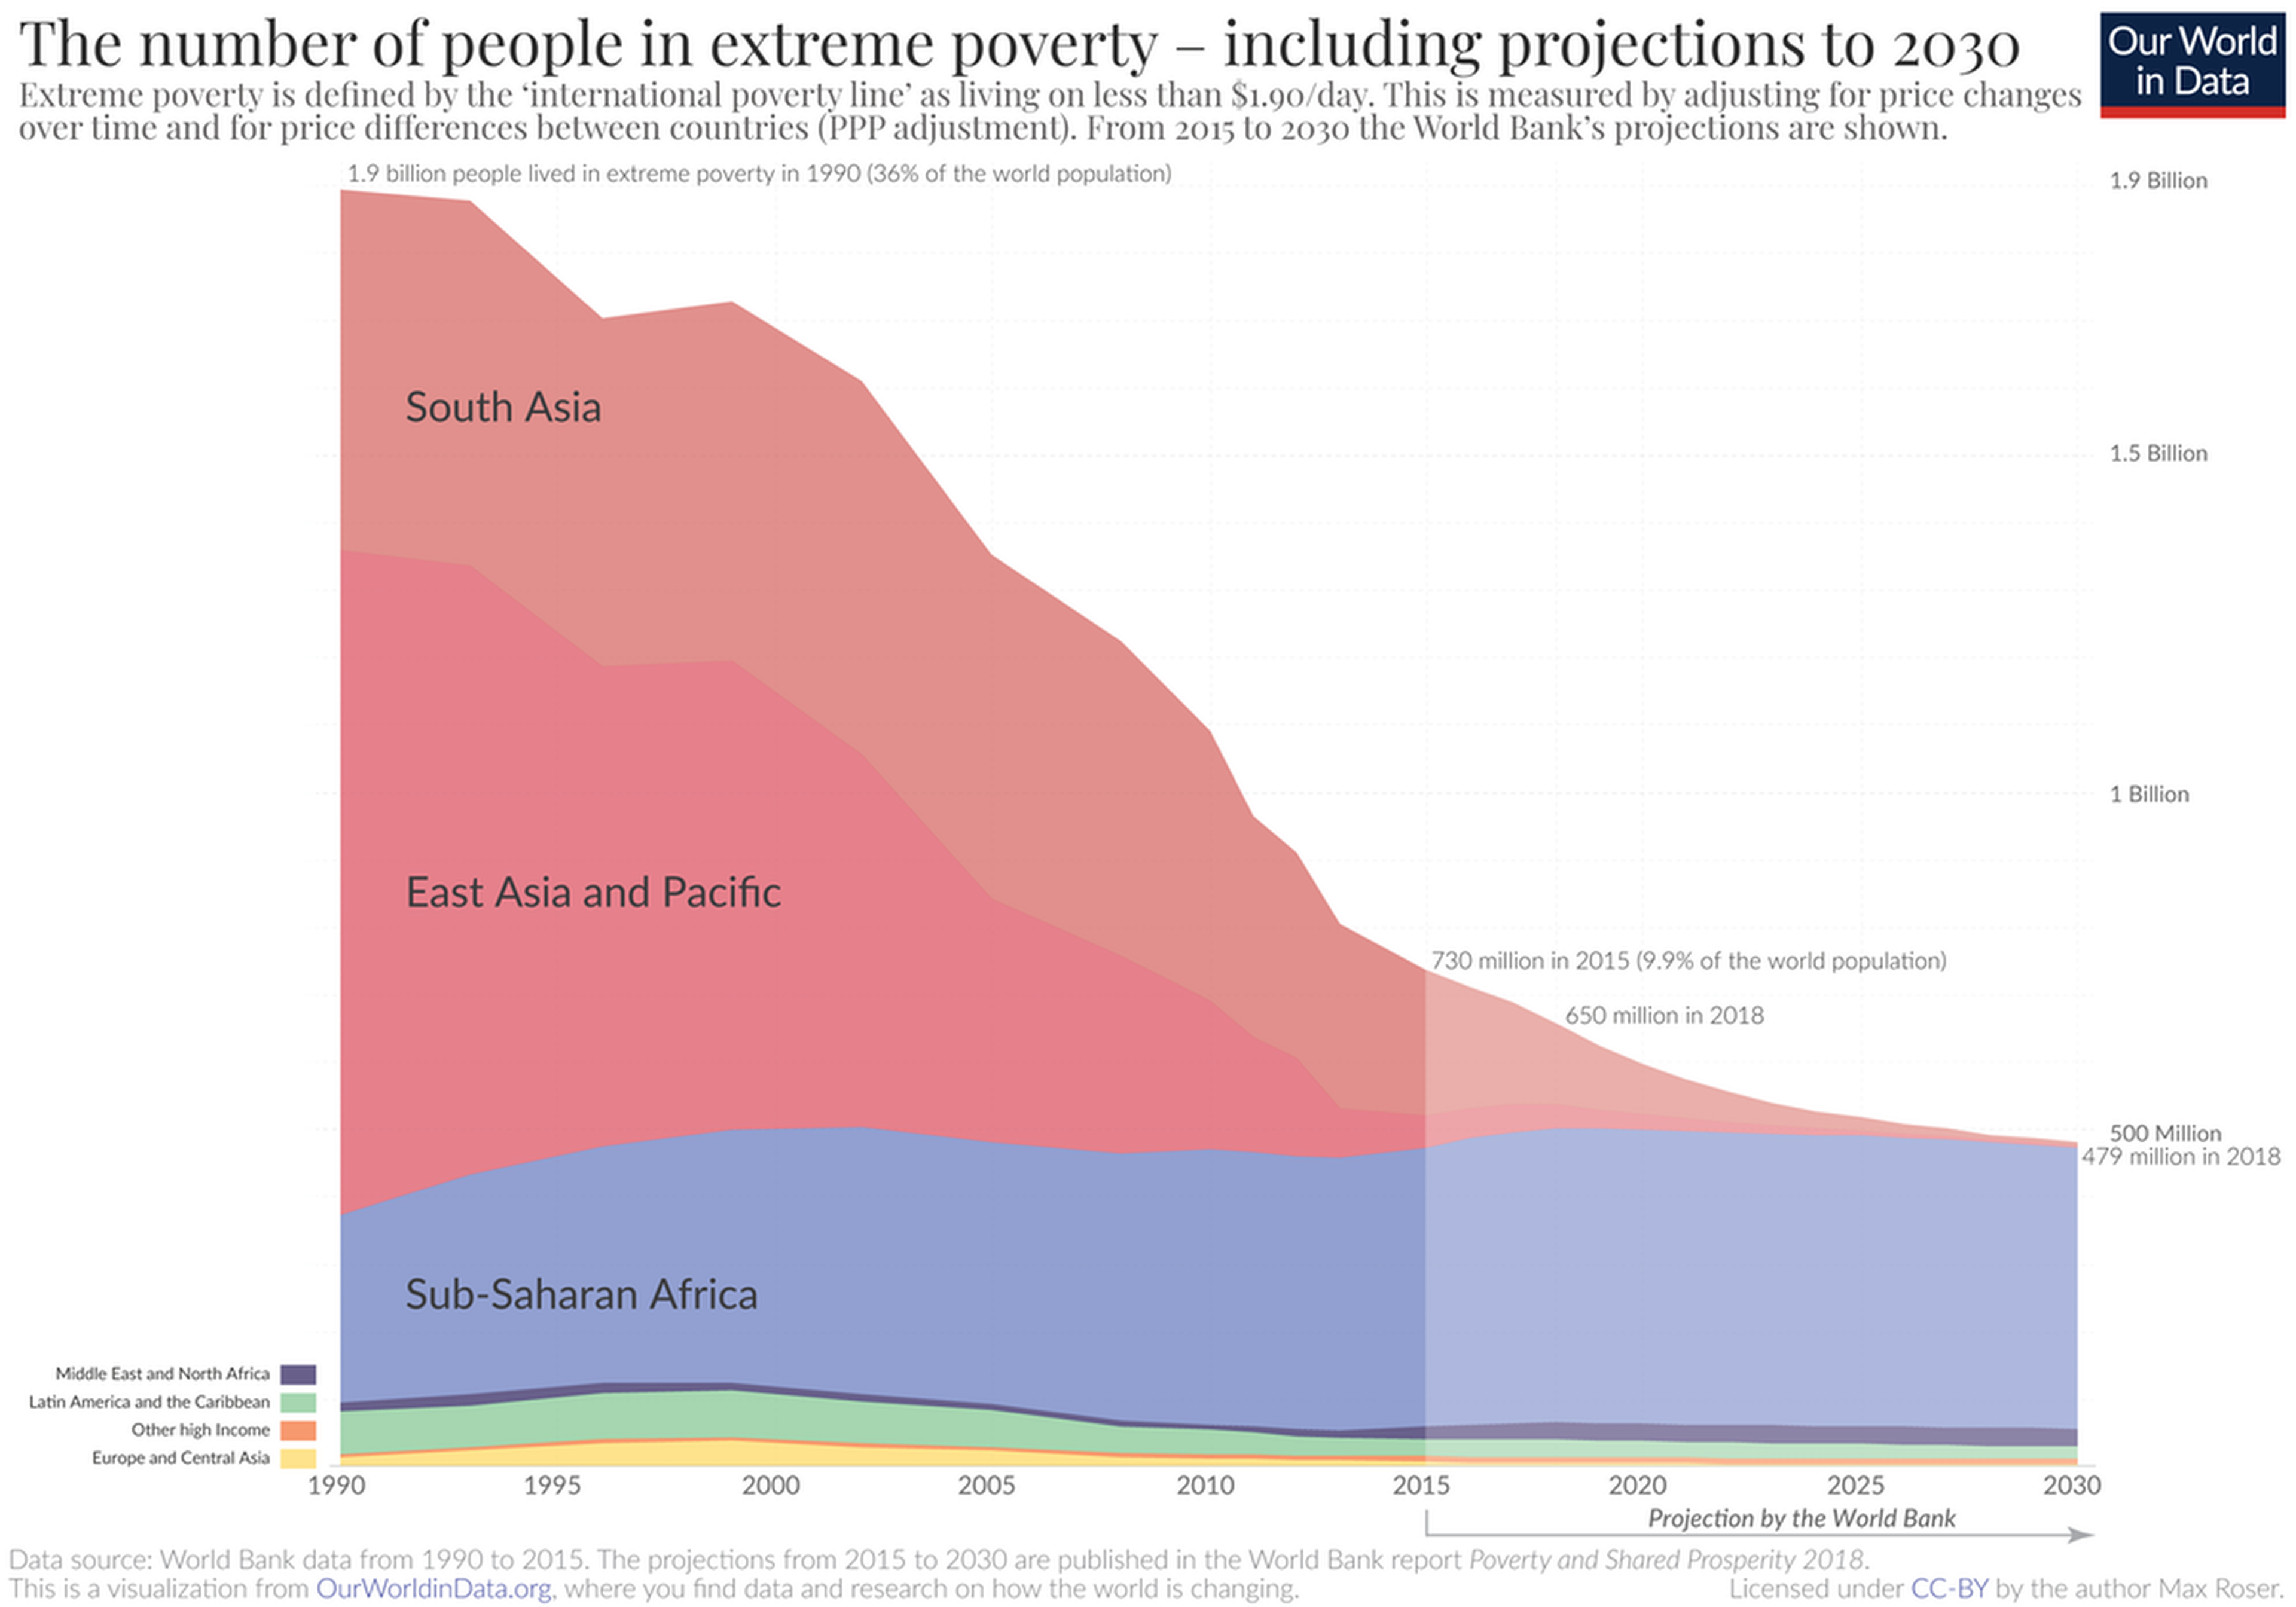 Pobreza Extrema en el mundo y proyecciones hasta 2030 según el Banco Mundial.